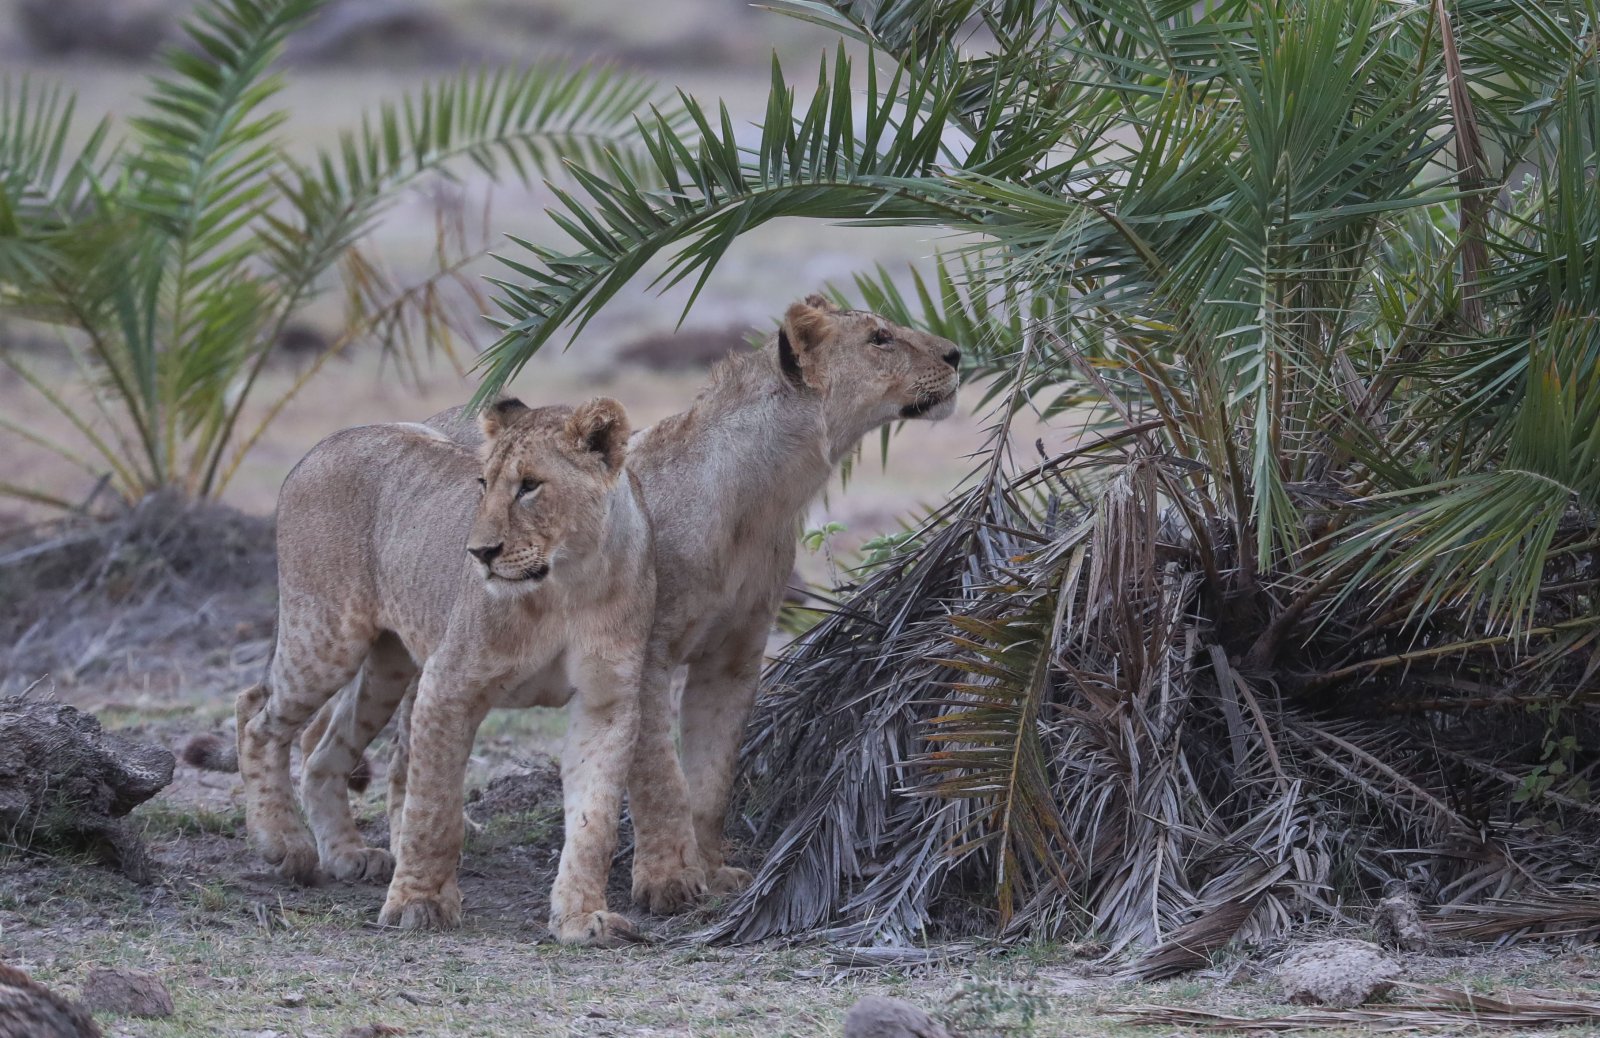 這是6月12日在肯尼亚安博塞利國家公園拍攝的獅子。